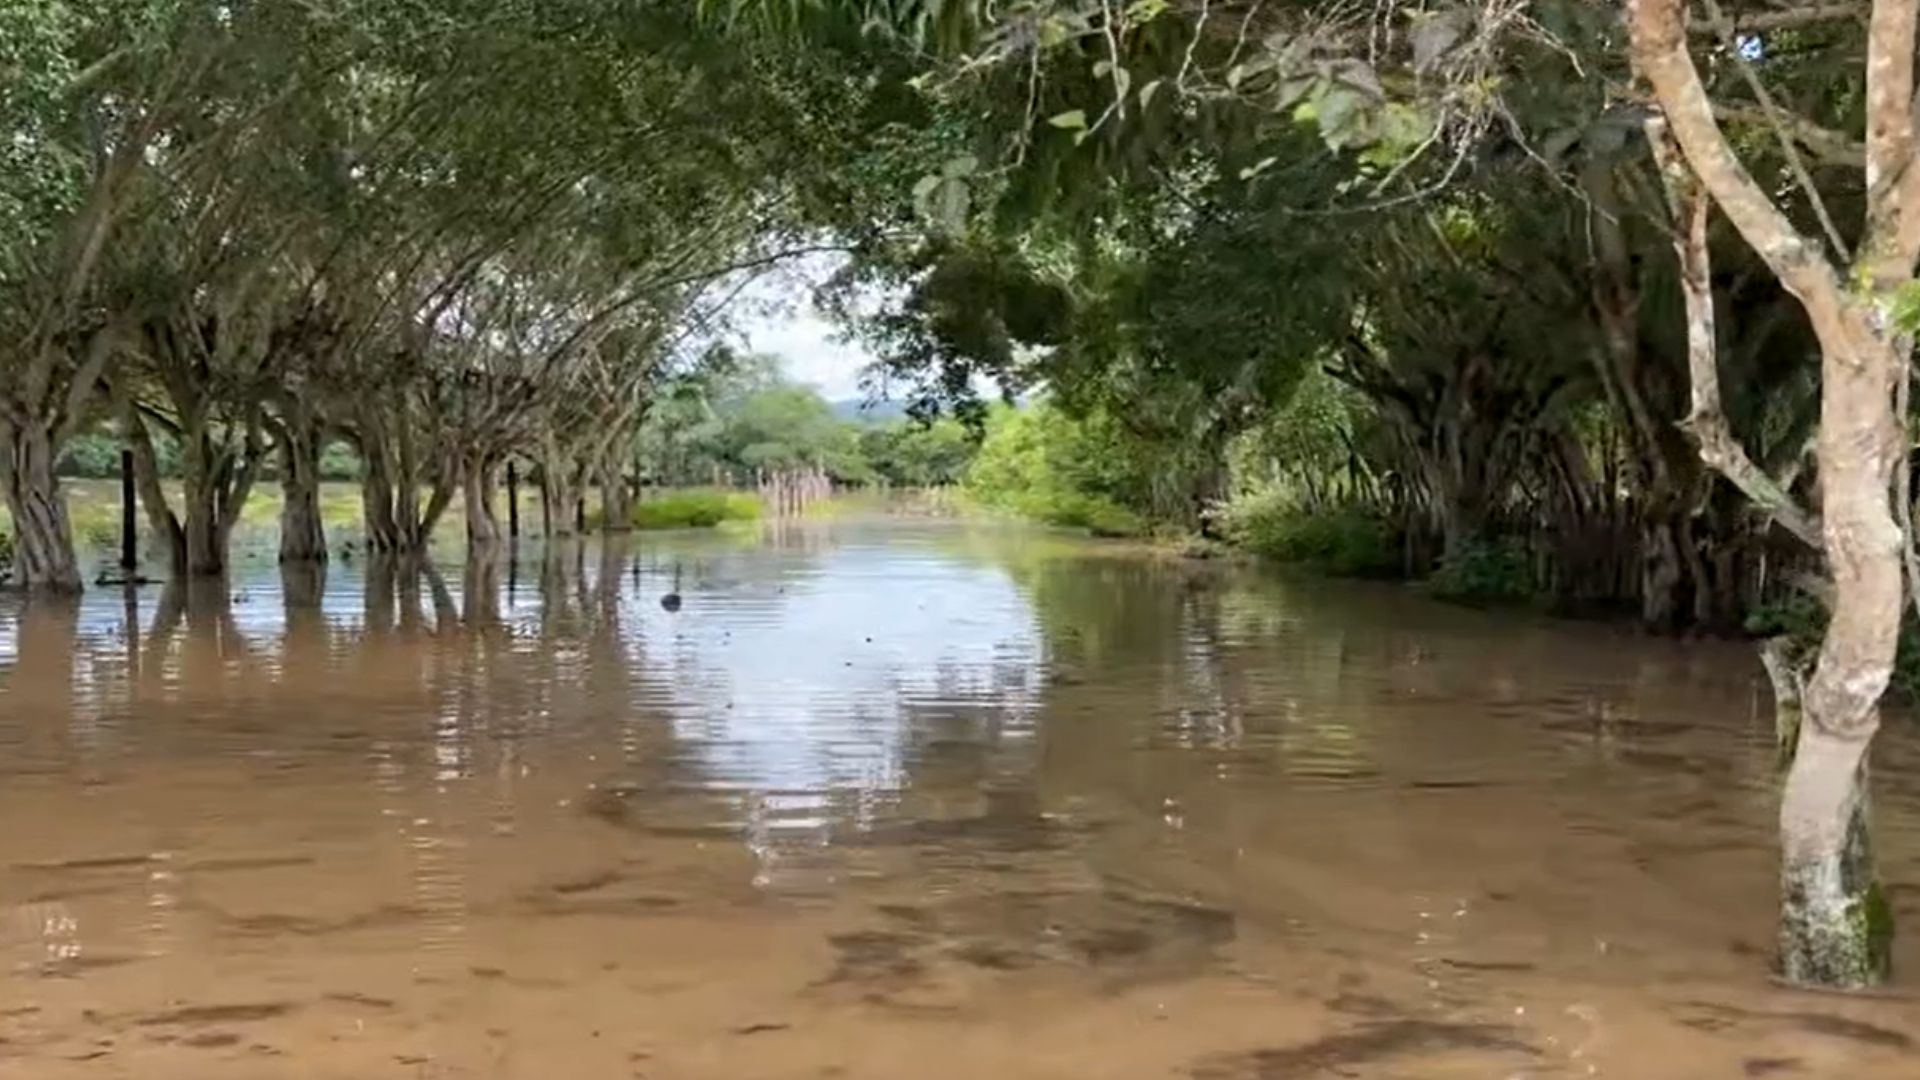 Río Mayo se desborda e inunda varias viviendas y carretera en Tarapoto.
Foto: Captura de Canal N